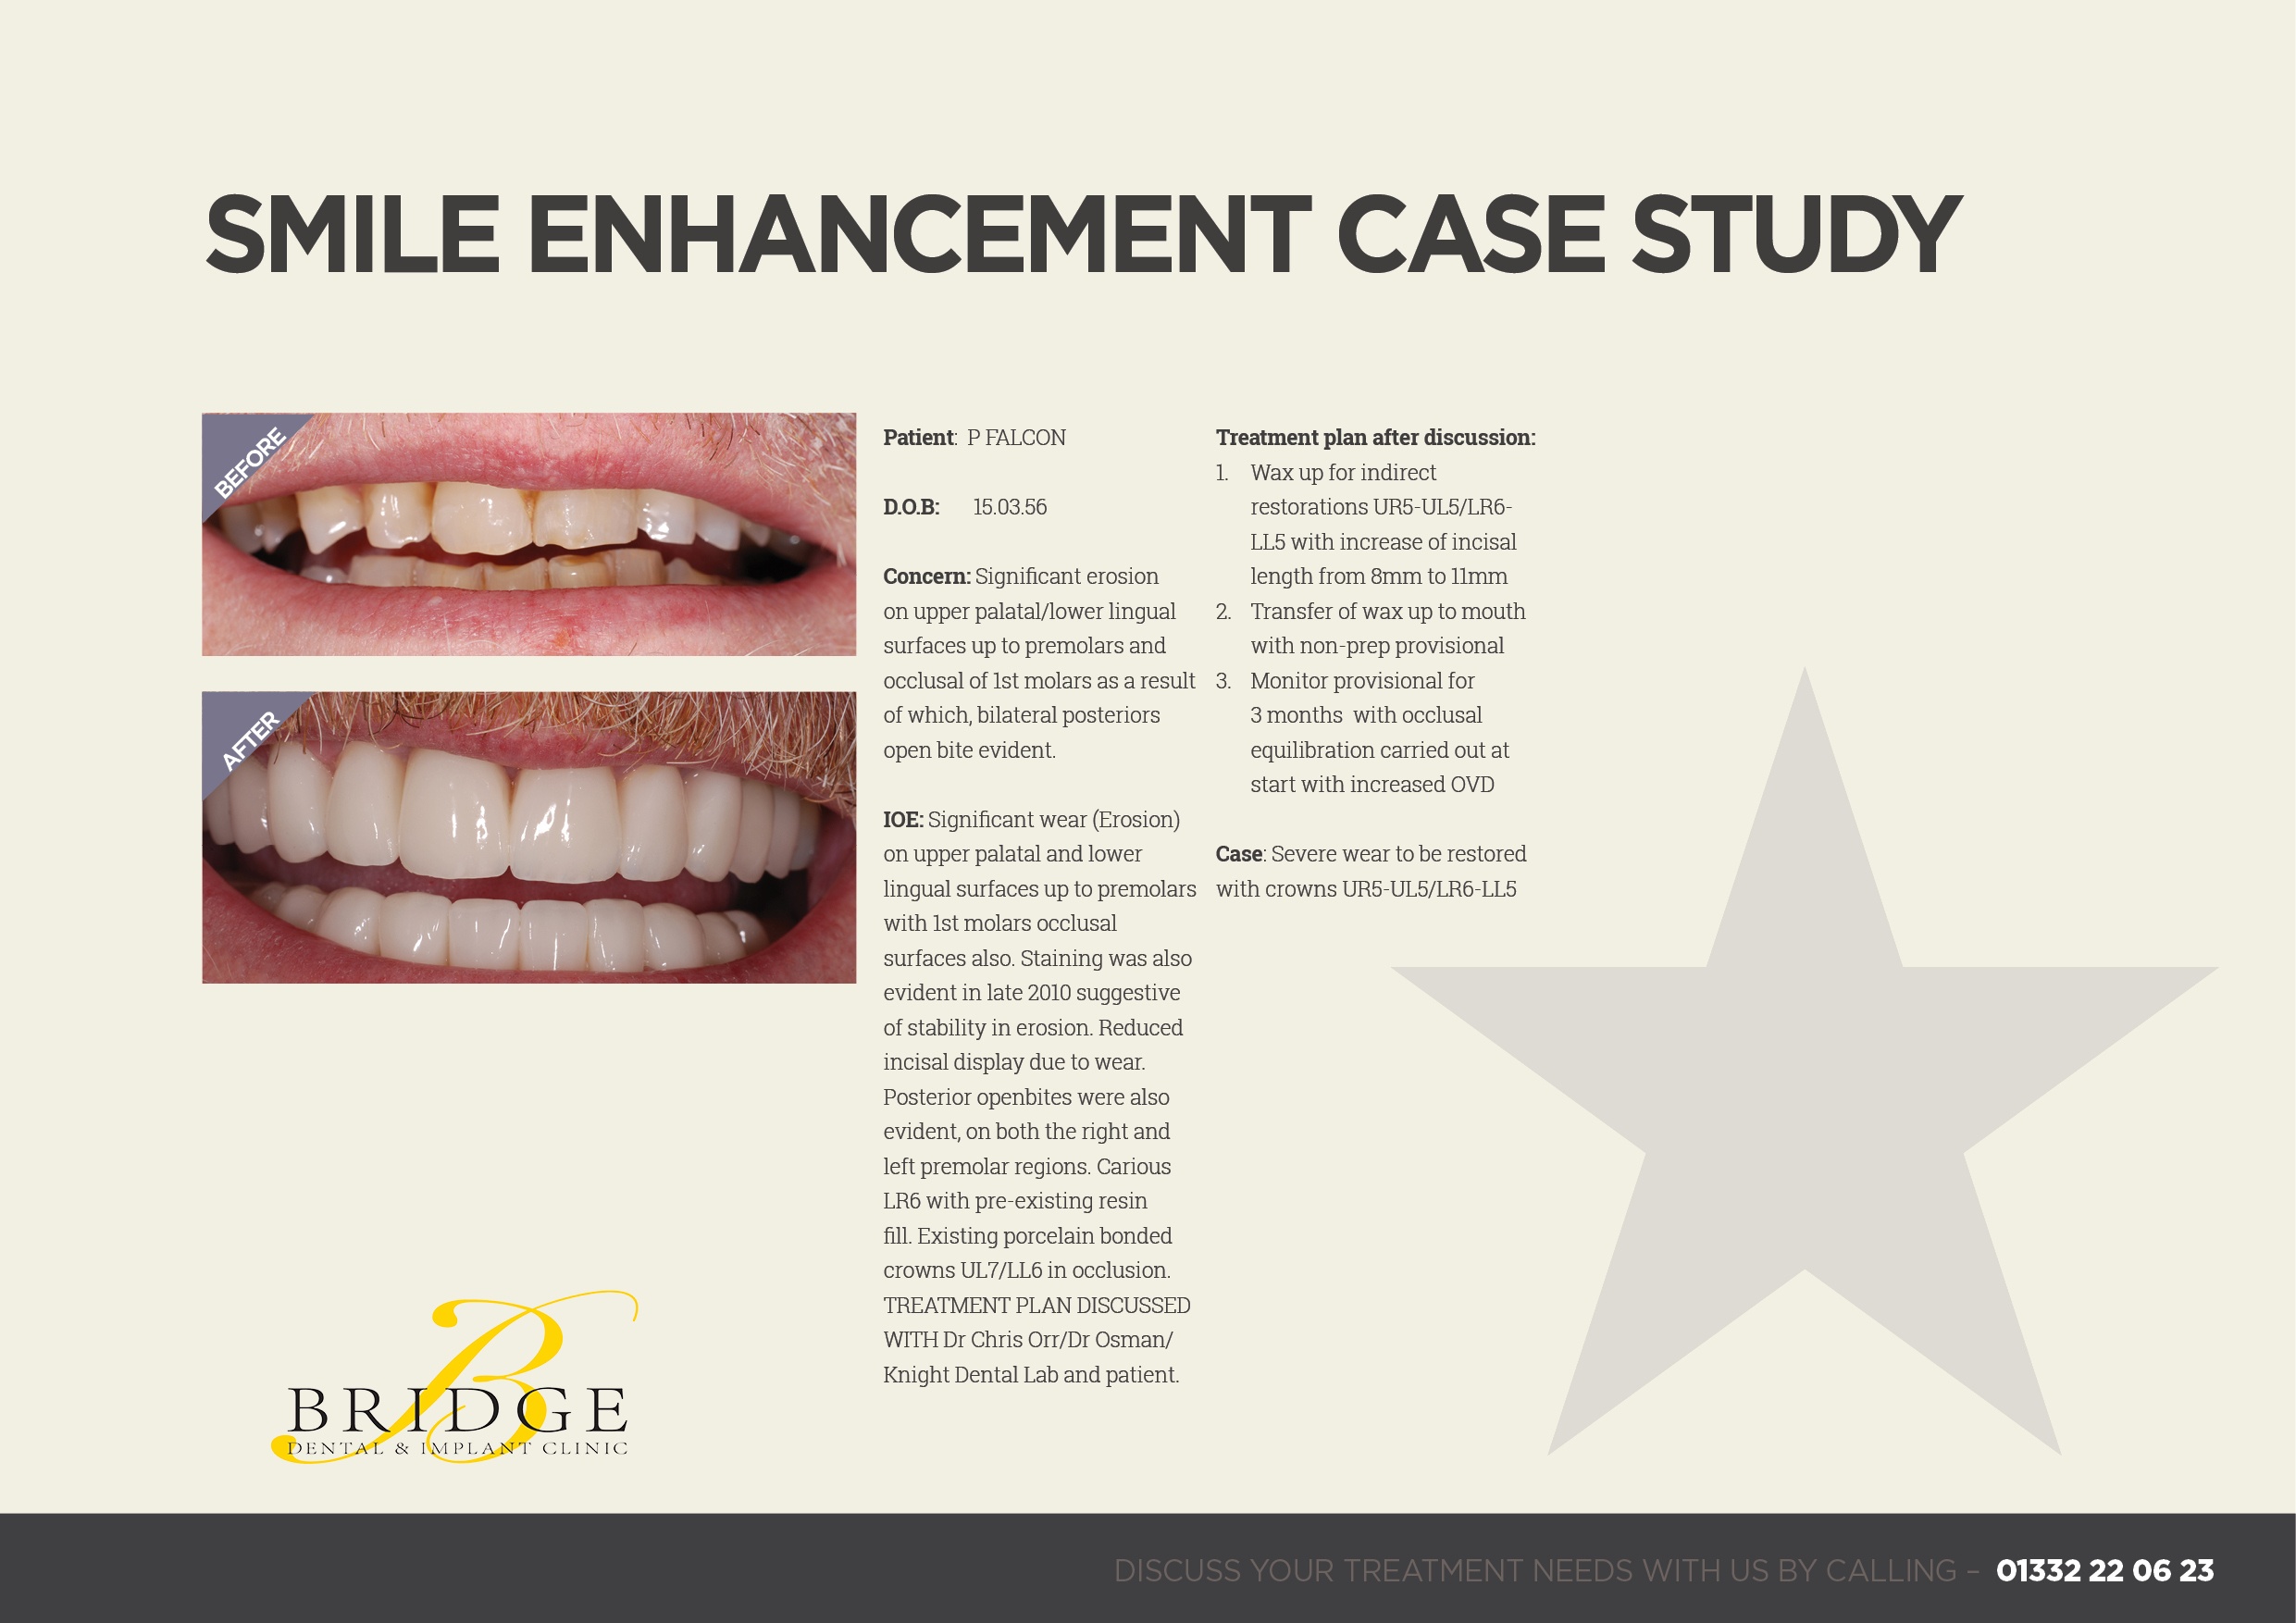 Smile enhancement Case Study - Bridge Dental Clinic